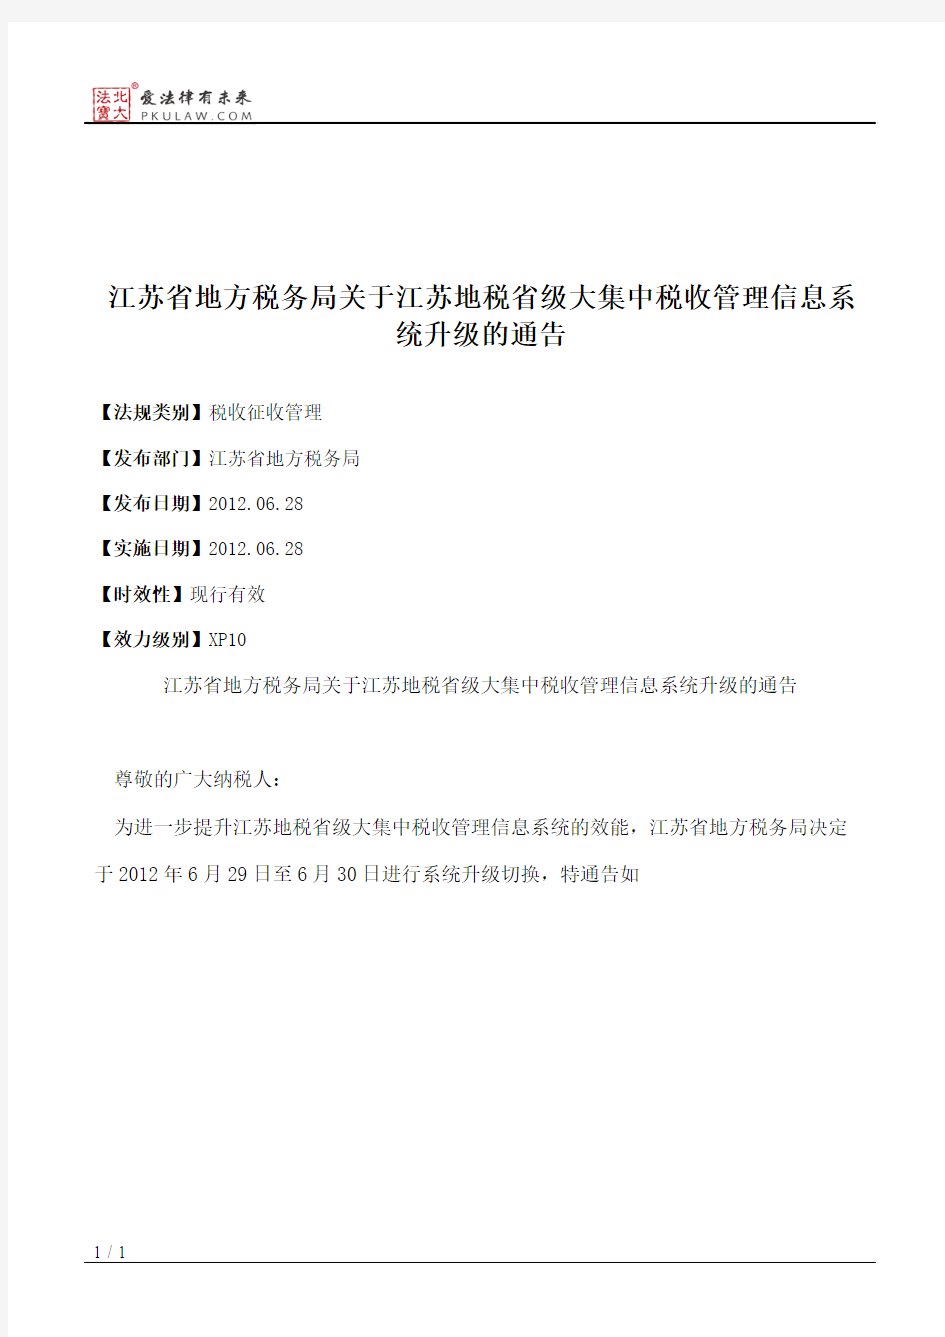 江苏省地方税务局关于江苏地税省级大集中税收管理信息系统升级的通告